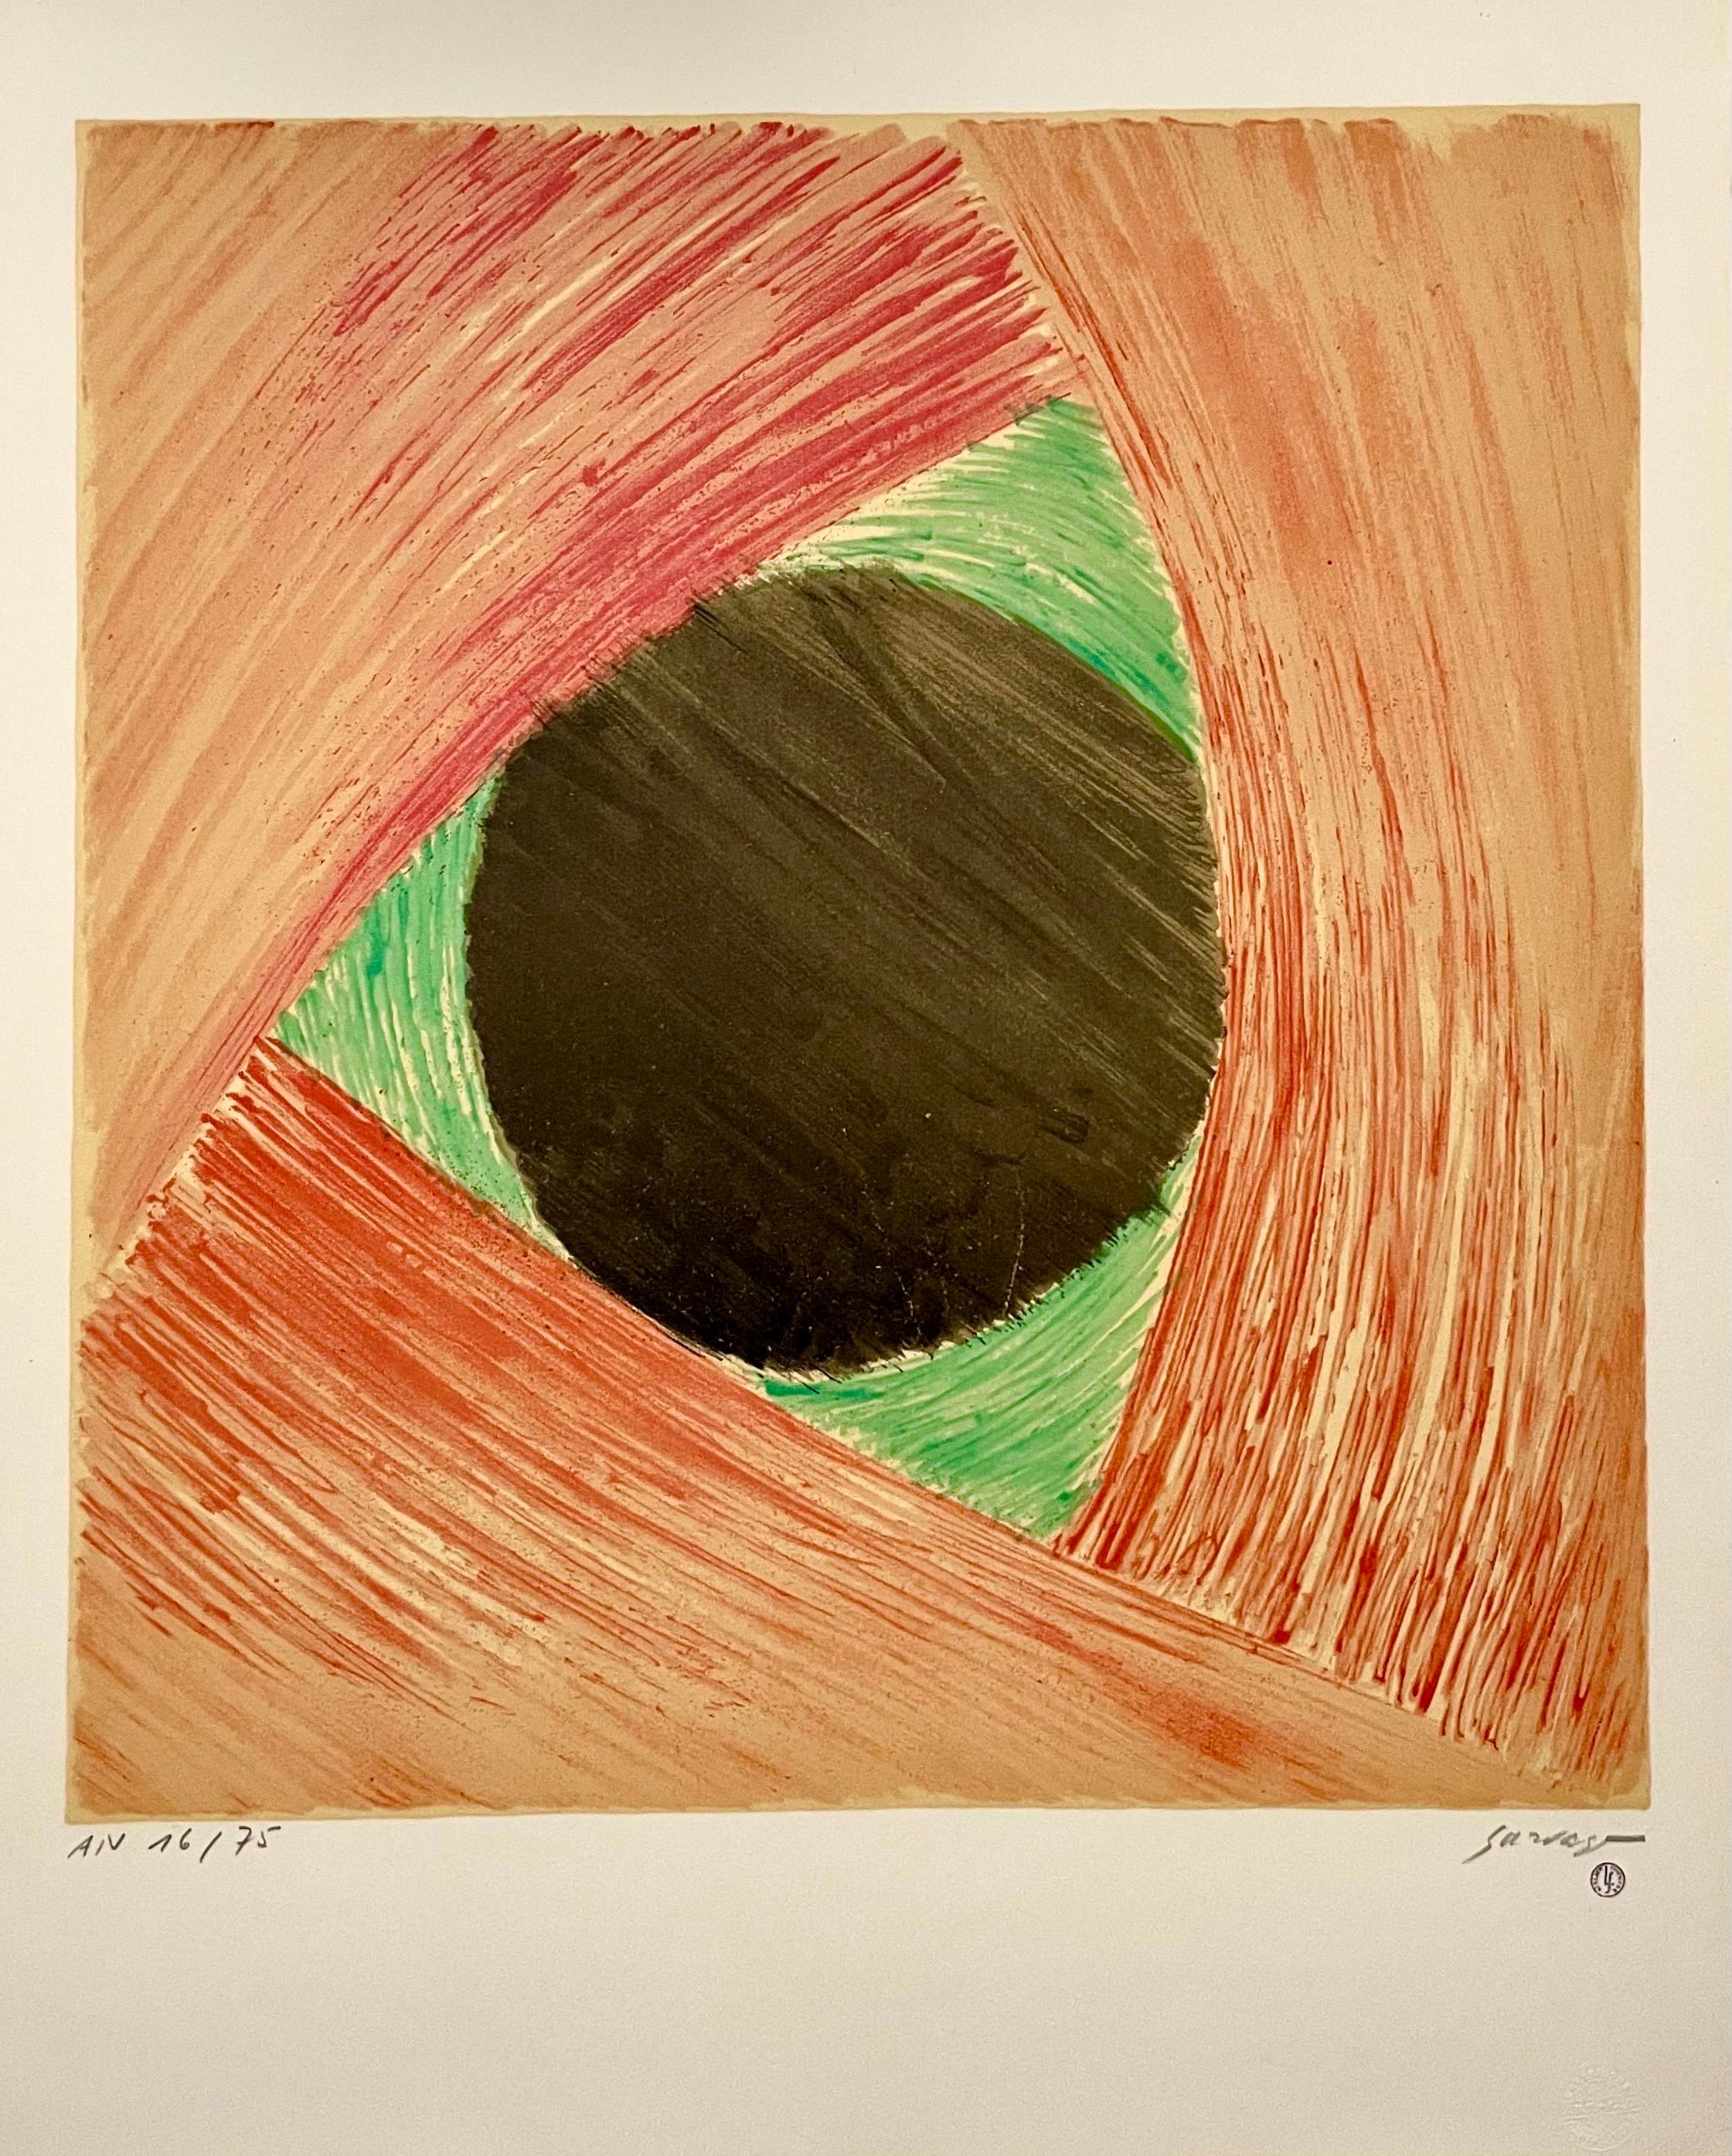 Léopold Survage Abstract Print – Russische, französische Avantgarde-Lithographie, Rhythmus in farbenfrohem, lebhaftem, abstraktem Druck